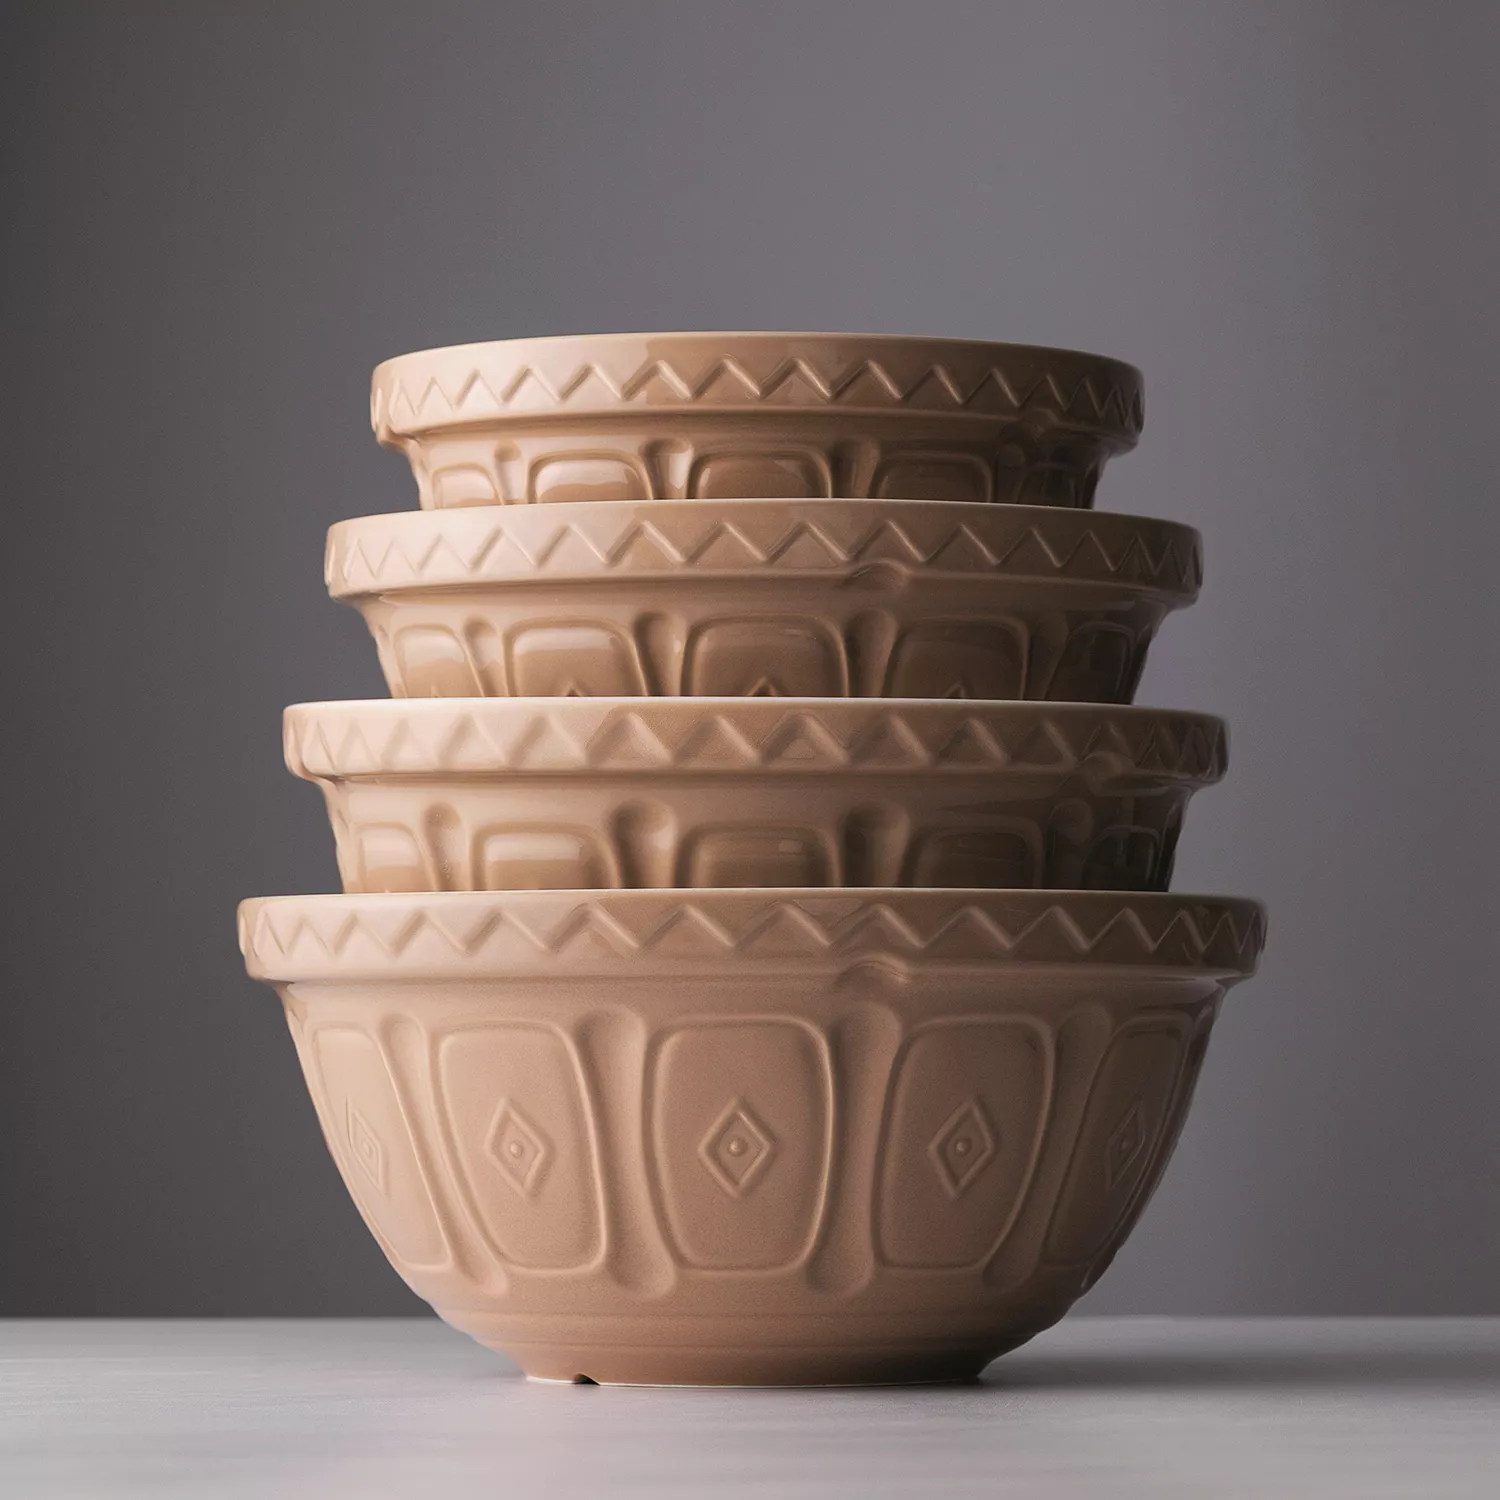 Sur La Table Ceramic Mixing Bowls, Set of 3